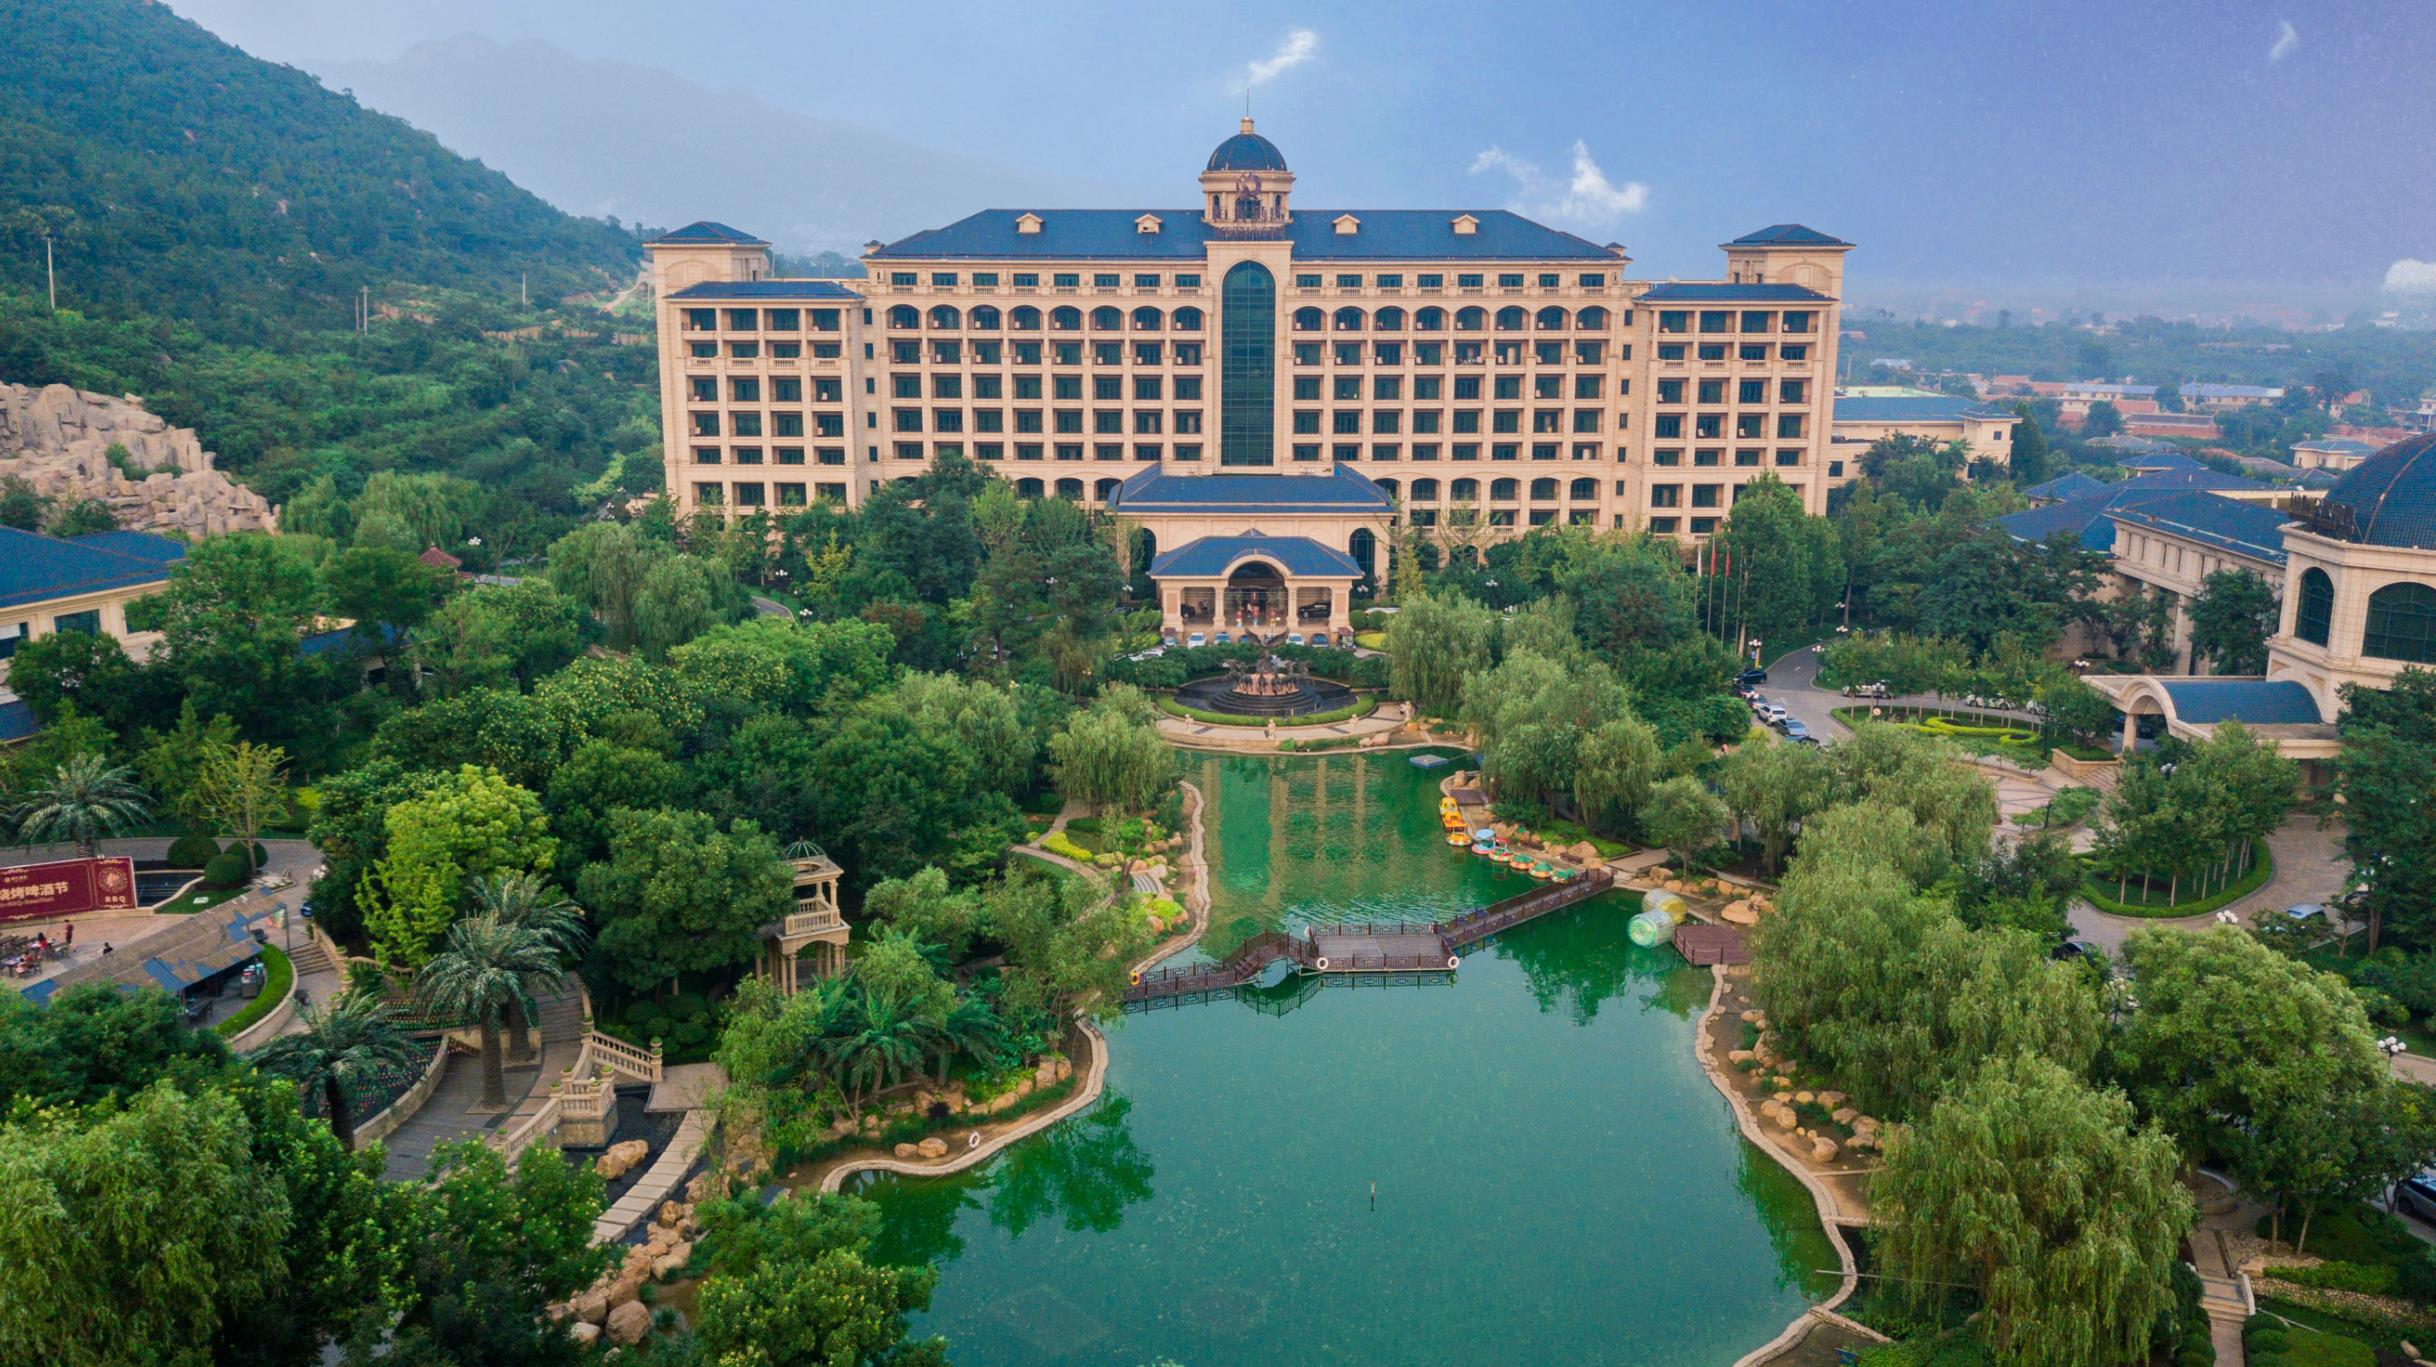 天津恒大酒店位于天津蓟州区,地处盘山风景区内,青山绿水,风景秀丽